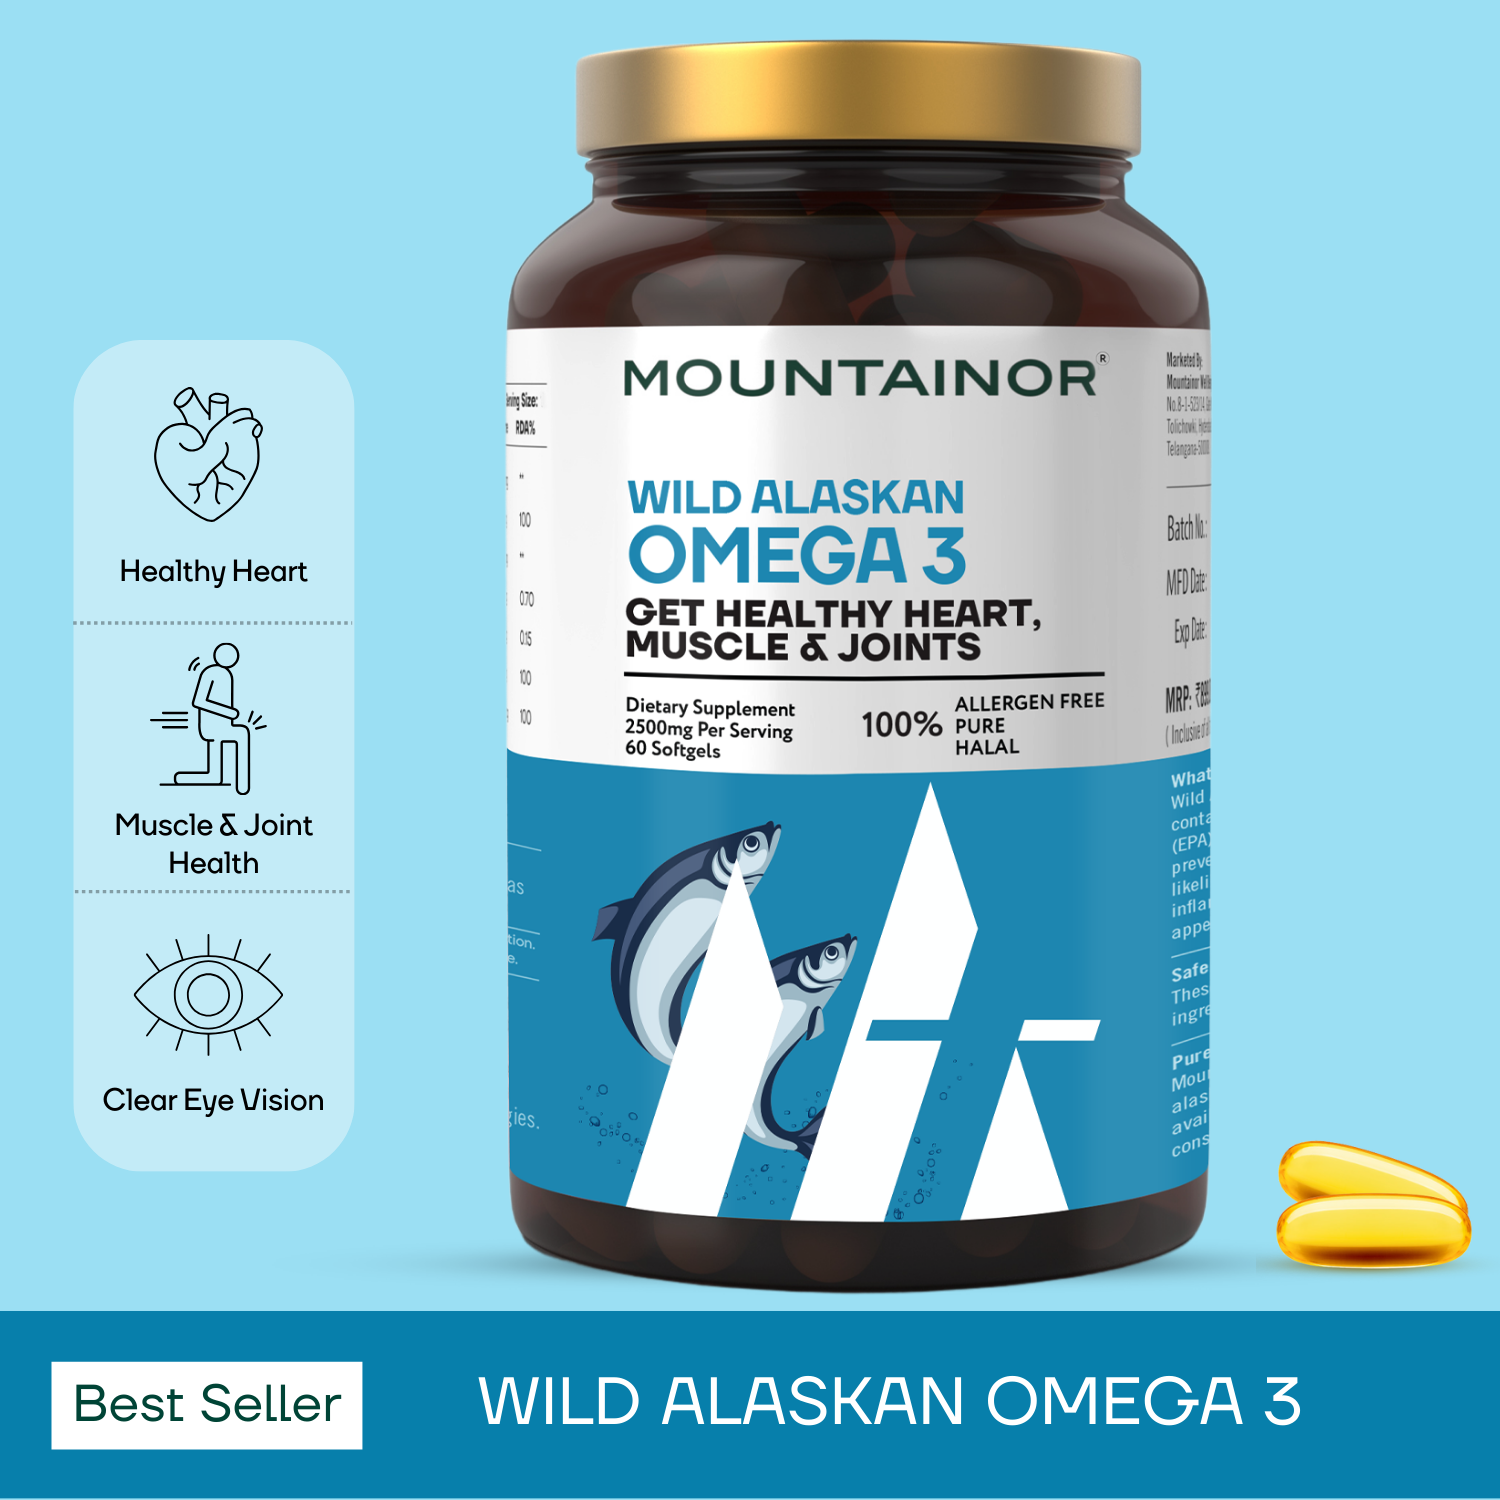 जंगली अलास्का ओमेगा-3 मछली का तेल - दिल और हड्डी के स्वास्थ्य को बढ़ावा - आवश्यक फैटी एसिड के साथ 60 अल्ट्रा-शुद्ध नरम जैल